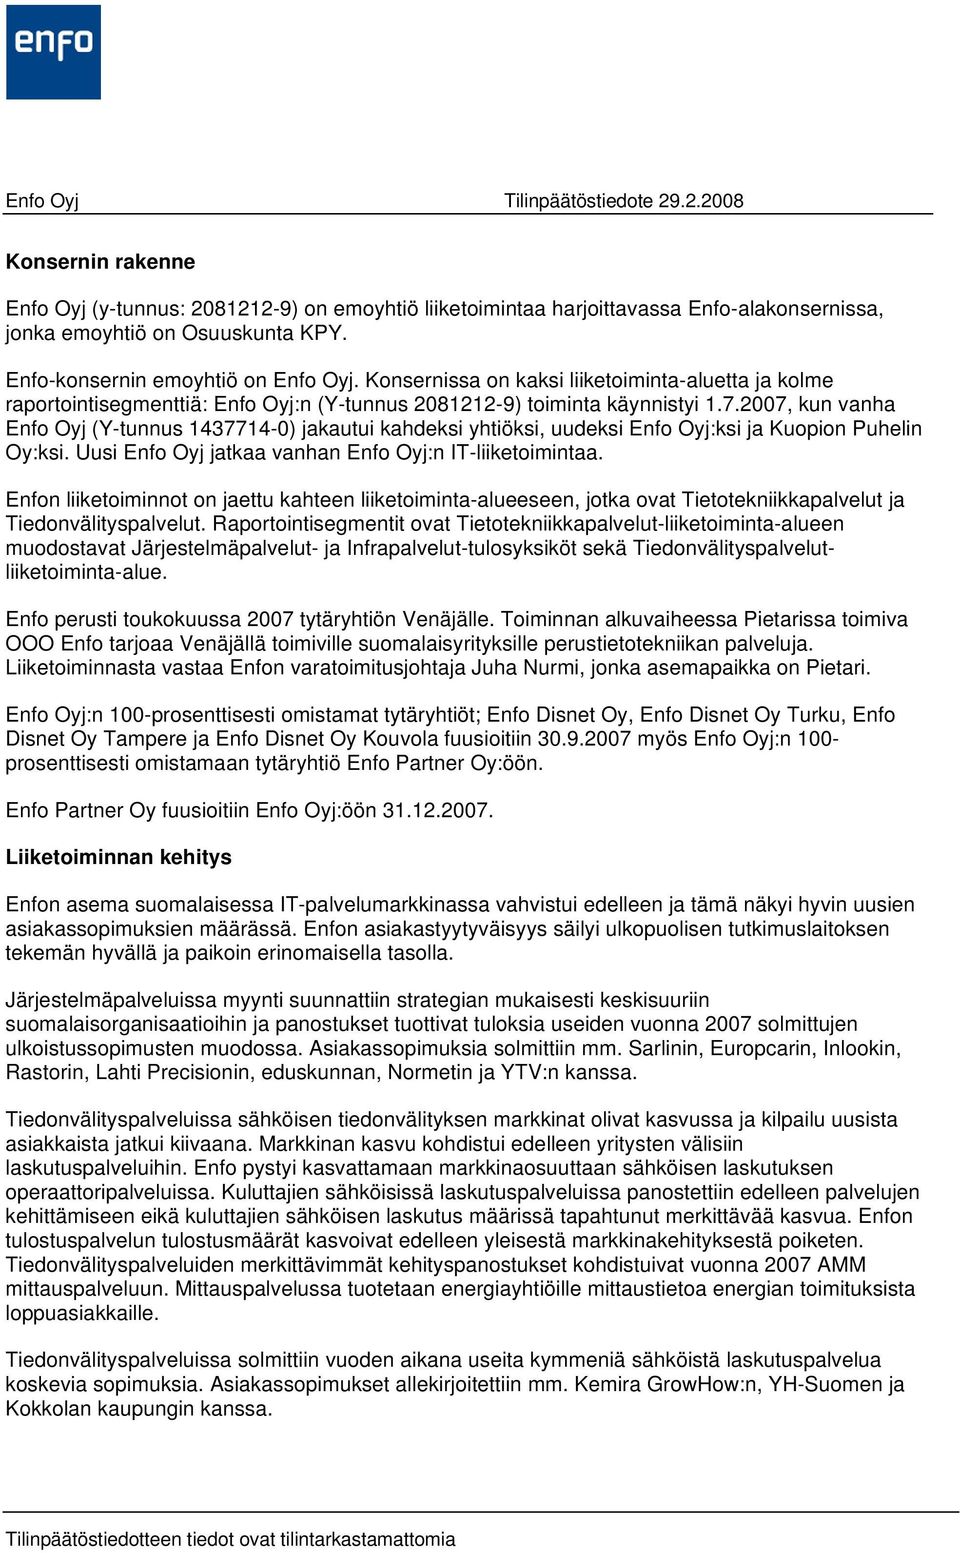 2007, kun vanha Enfo Oyj (Y-tunnus 1437714-0) jakautui kahdeksi yhtiöksi, uudeksi Enfo Oyj:ksi ja Kuopion Puhelin Oy:ksi. Uusi Enfo Oyj jatkaa vanhan Enfo Oyj:n IT-liiketoimintaa.